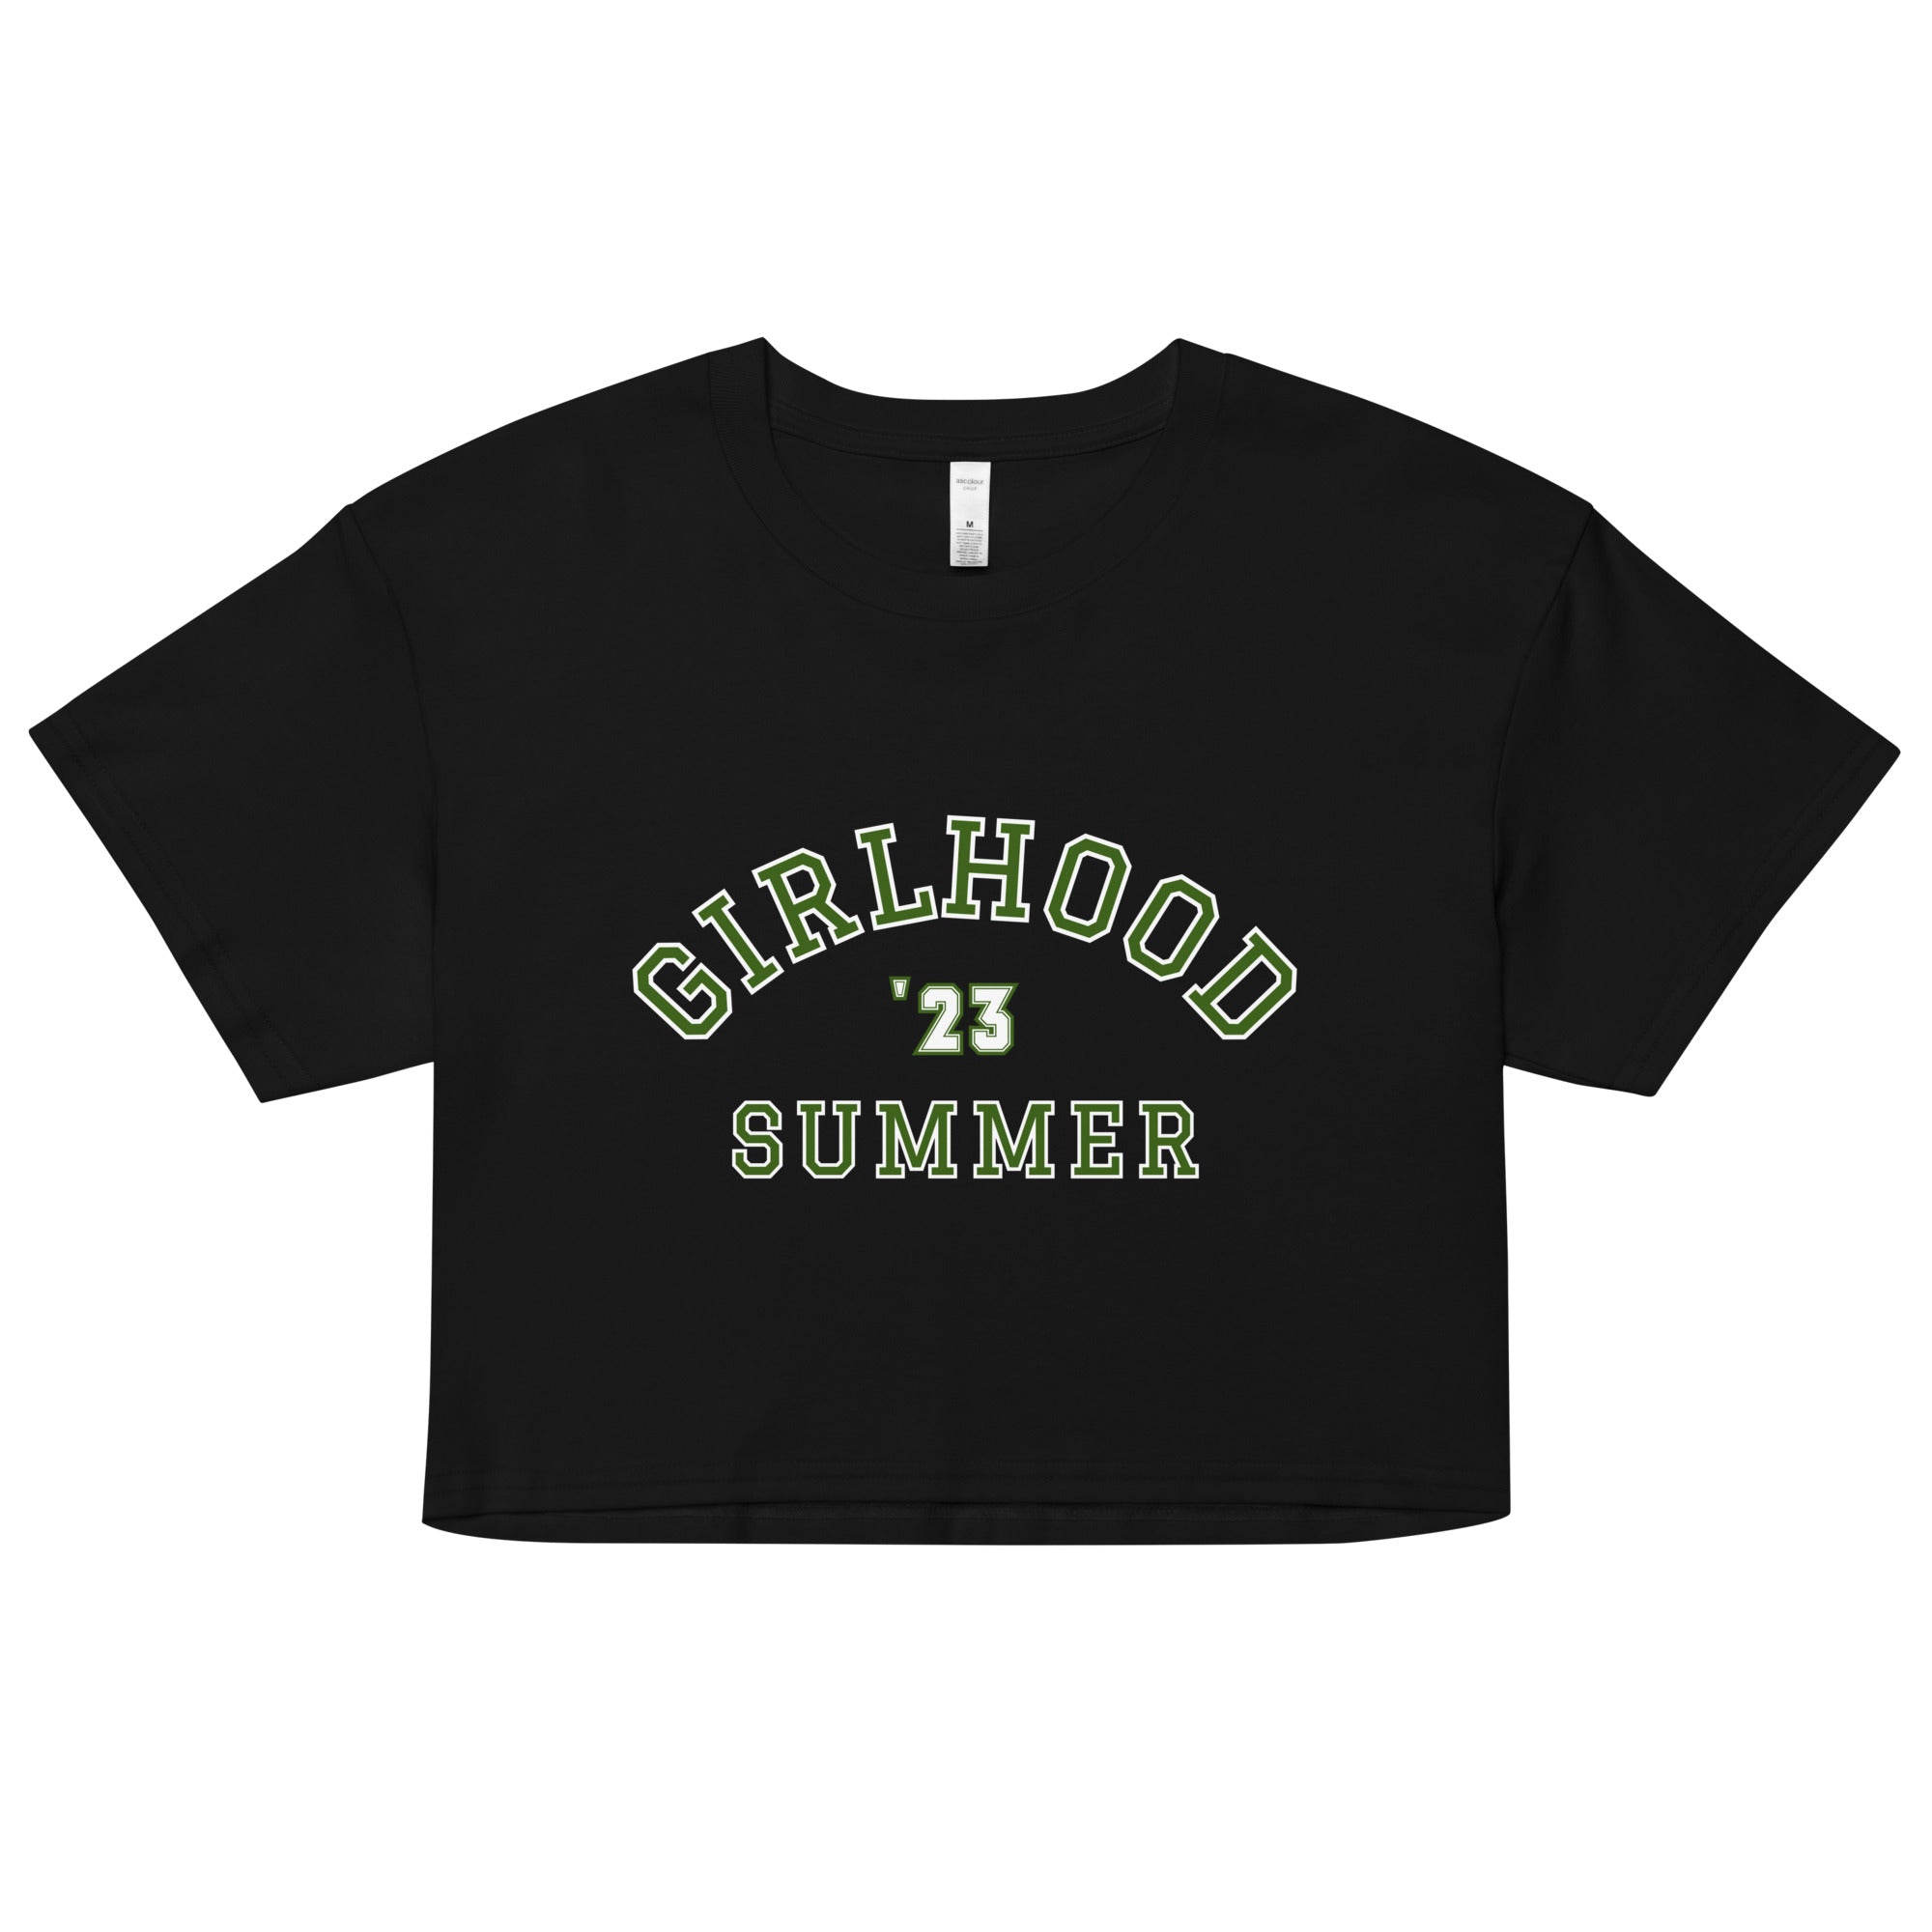 Girlhood Summer '23 Crop Top